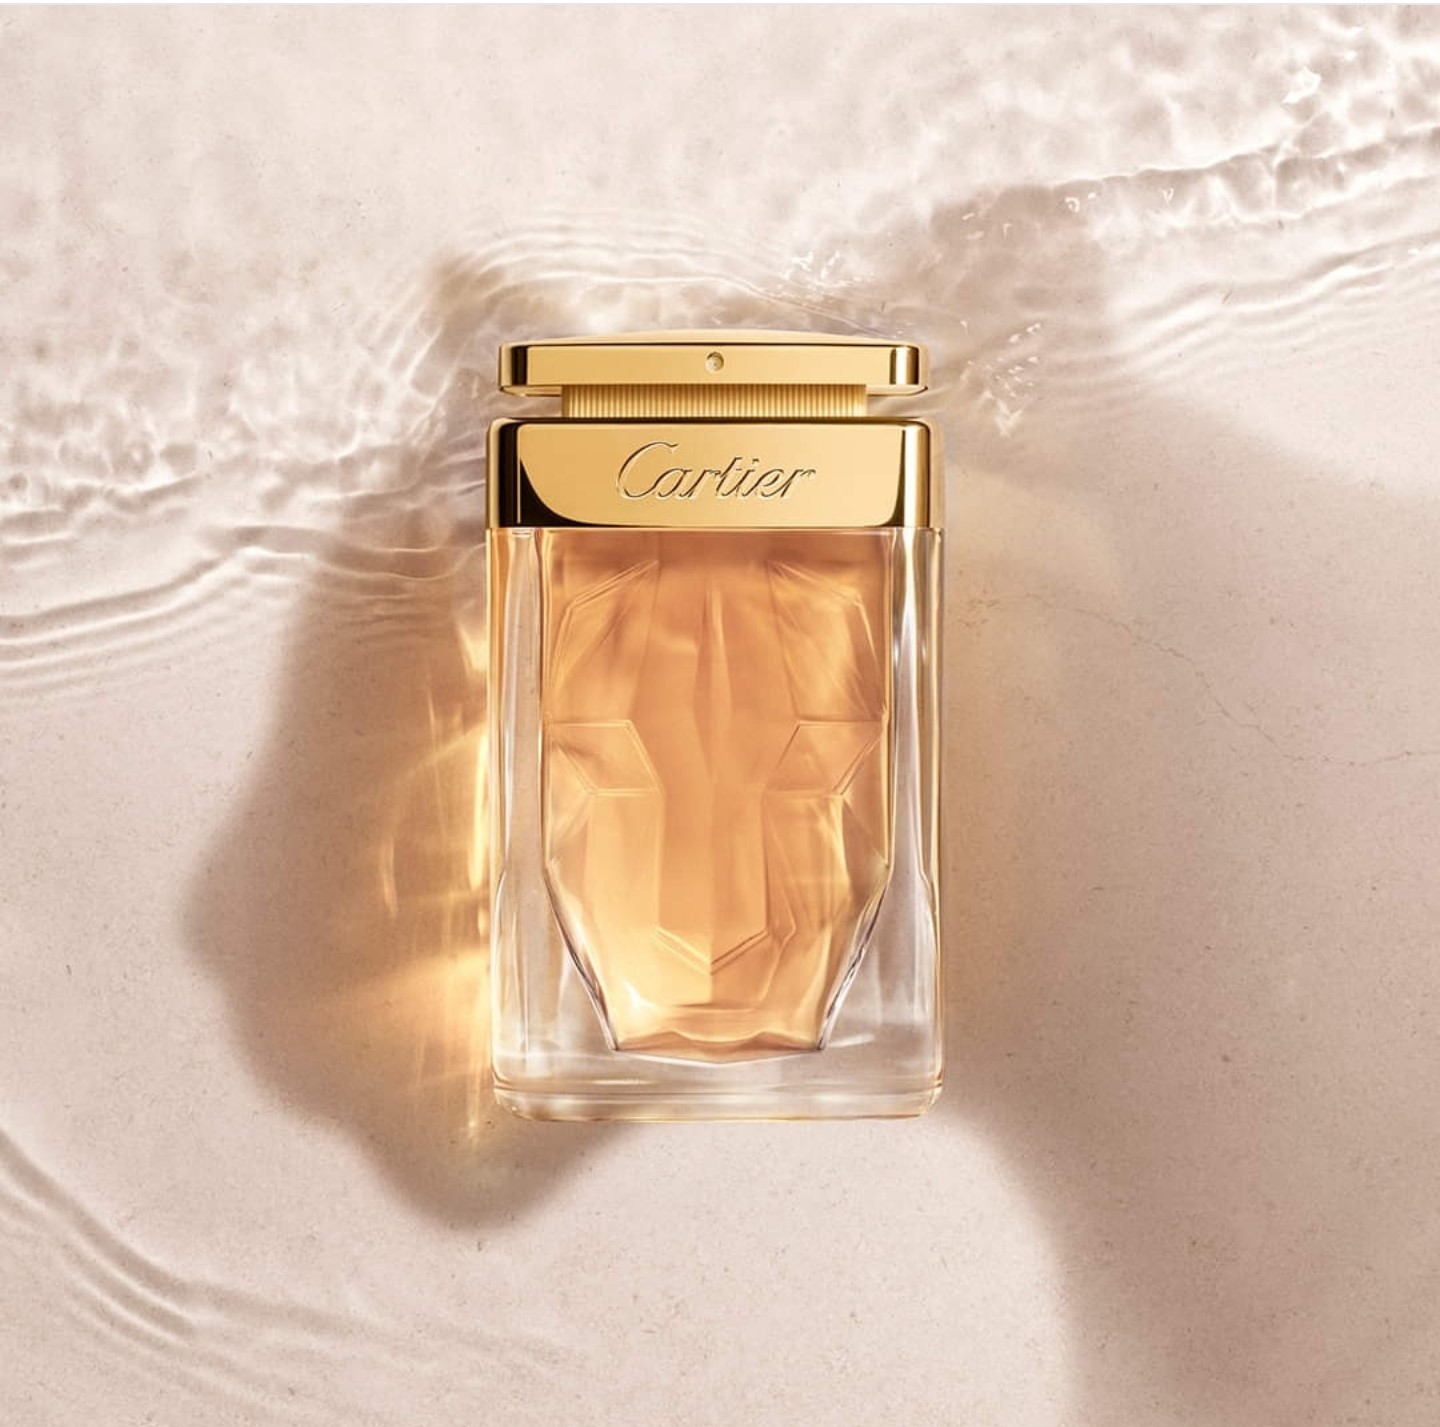 FREE Sample of Cartier La Panthere Eau De Parfum